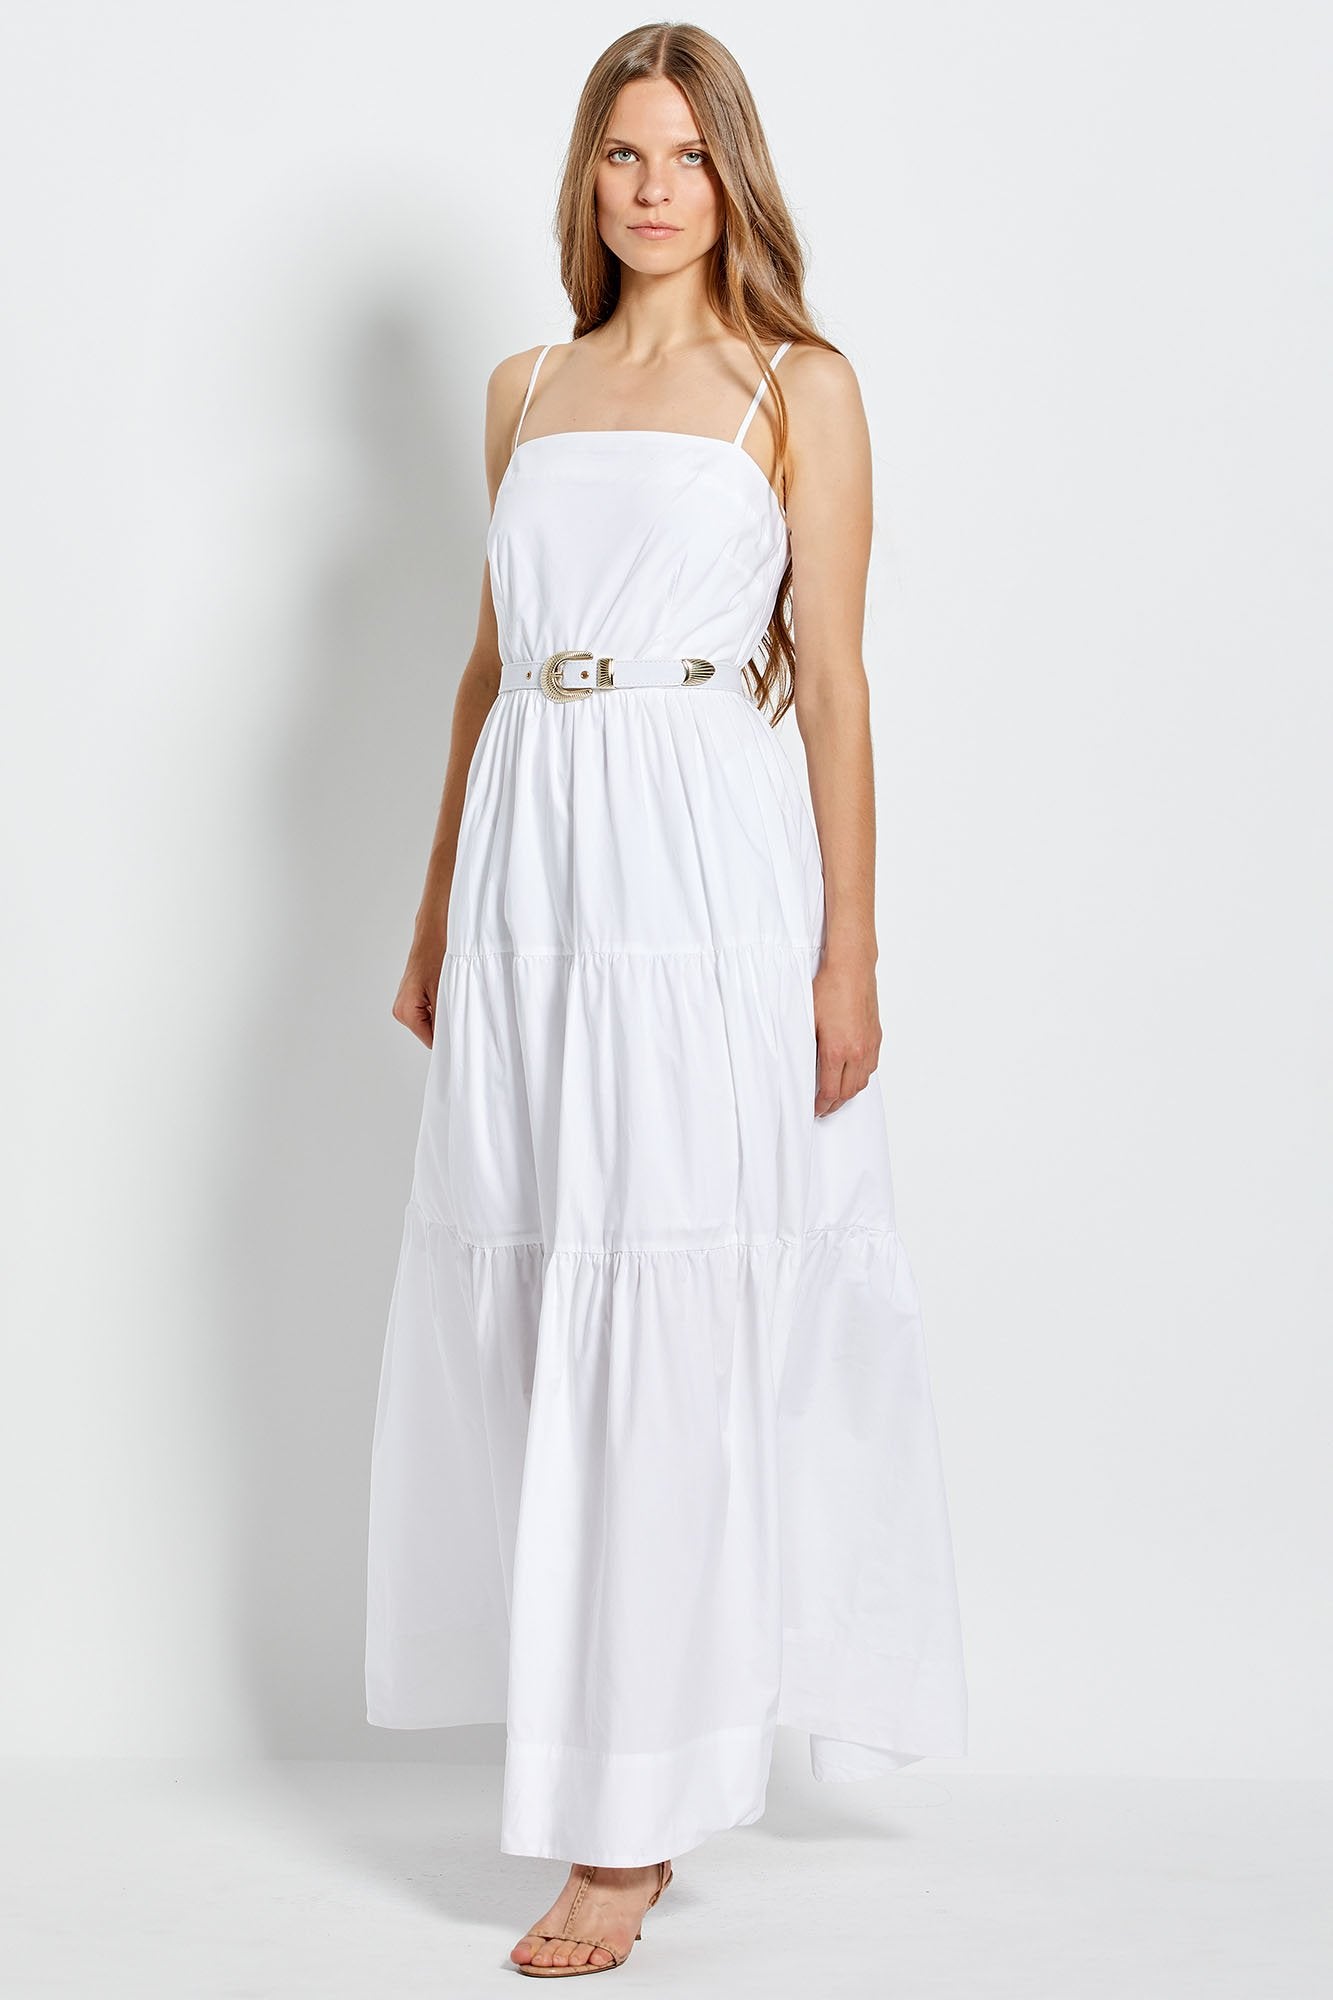 Kerala Dress - White